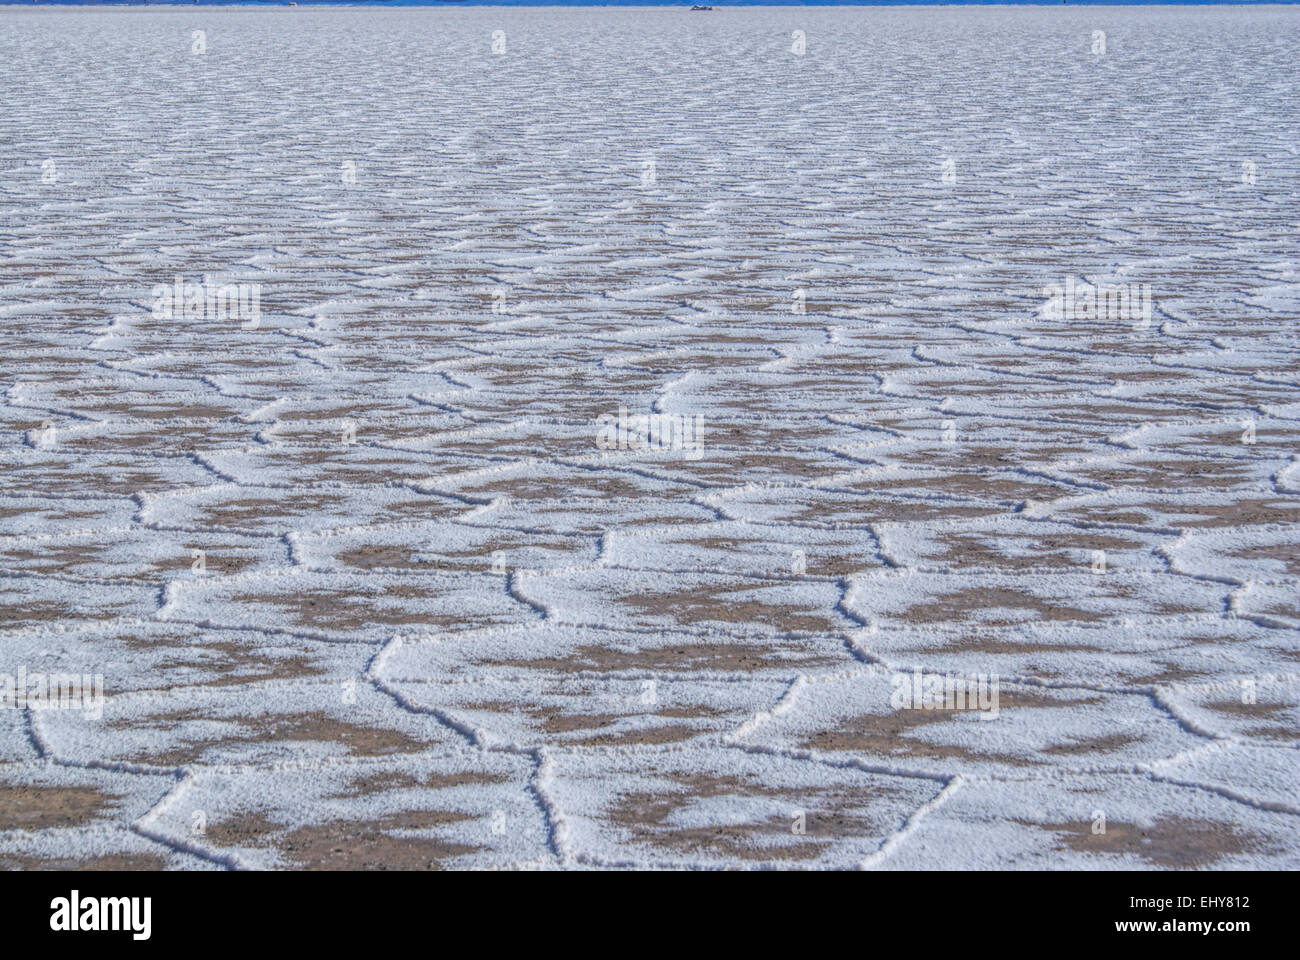 Le forme insolite sulla superficie dei piani di sale Salina Grandes in Argentina Foto Stock